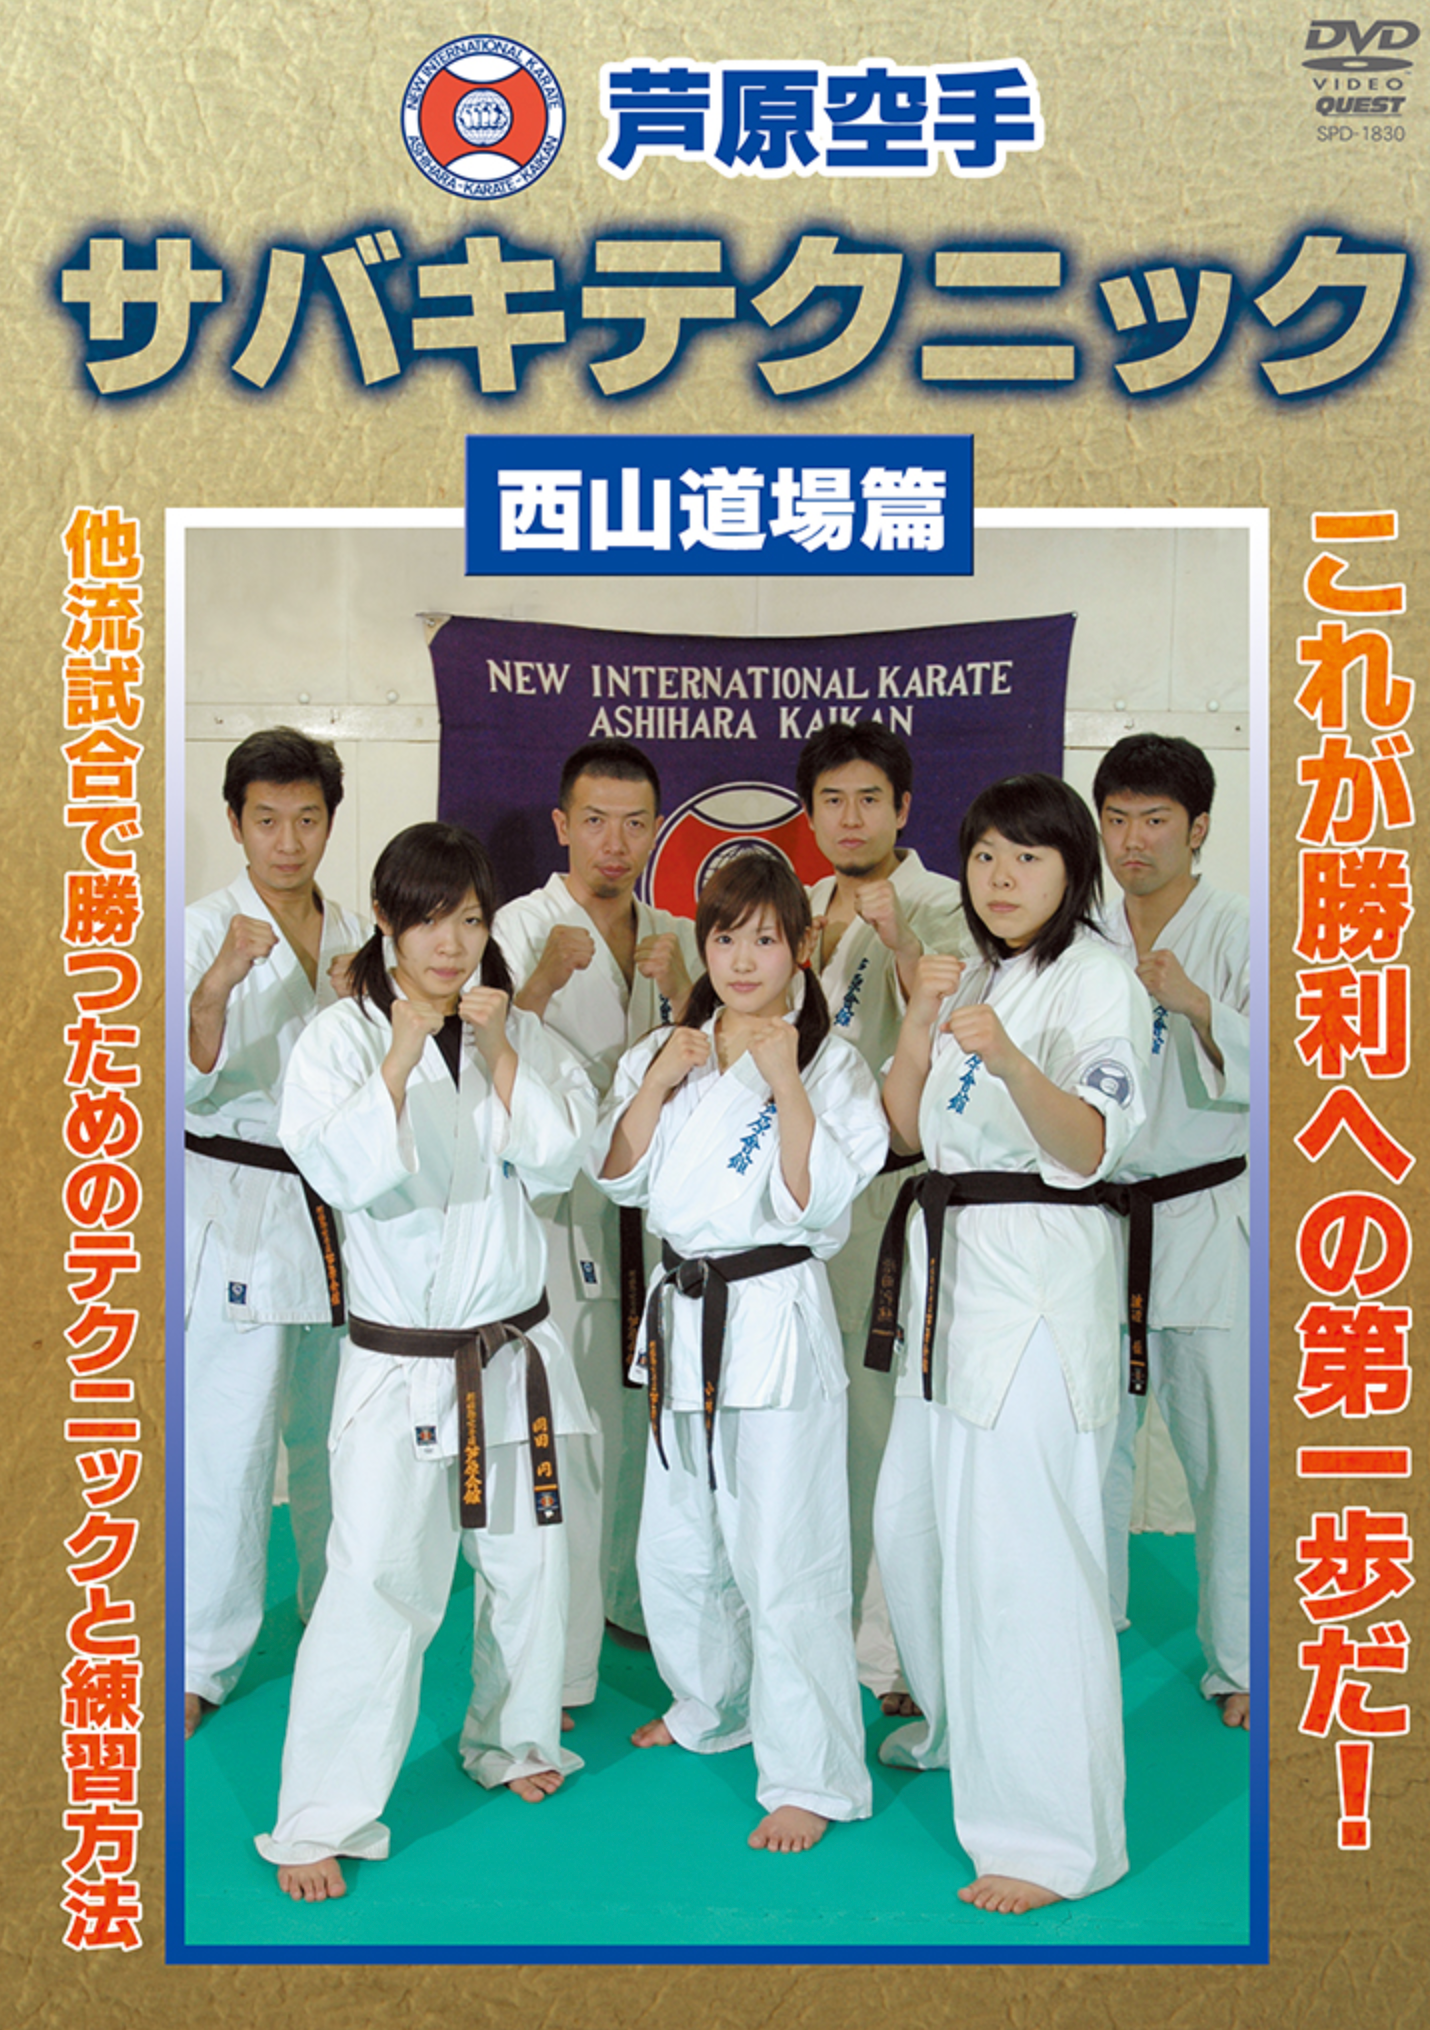 Ashihara Kaikan Sabaki Technique DVD by Toru Nishiyama - Budovideos Inc